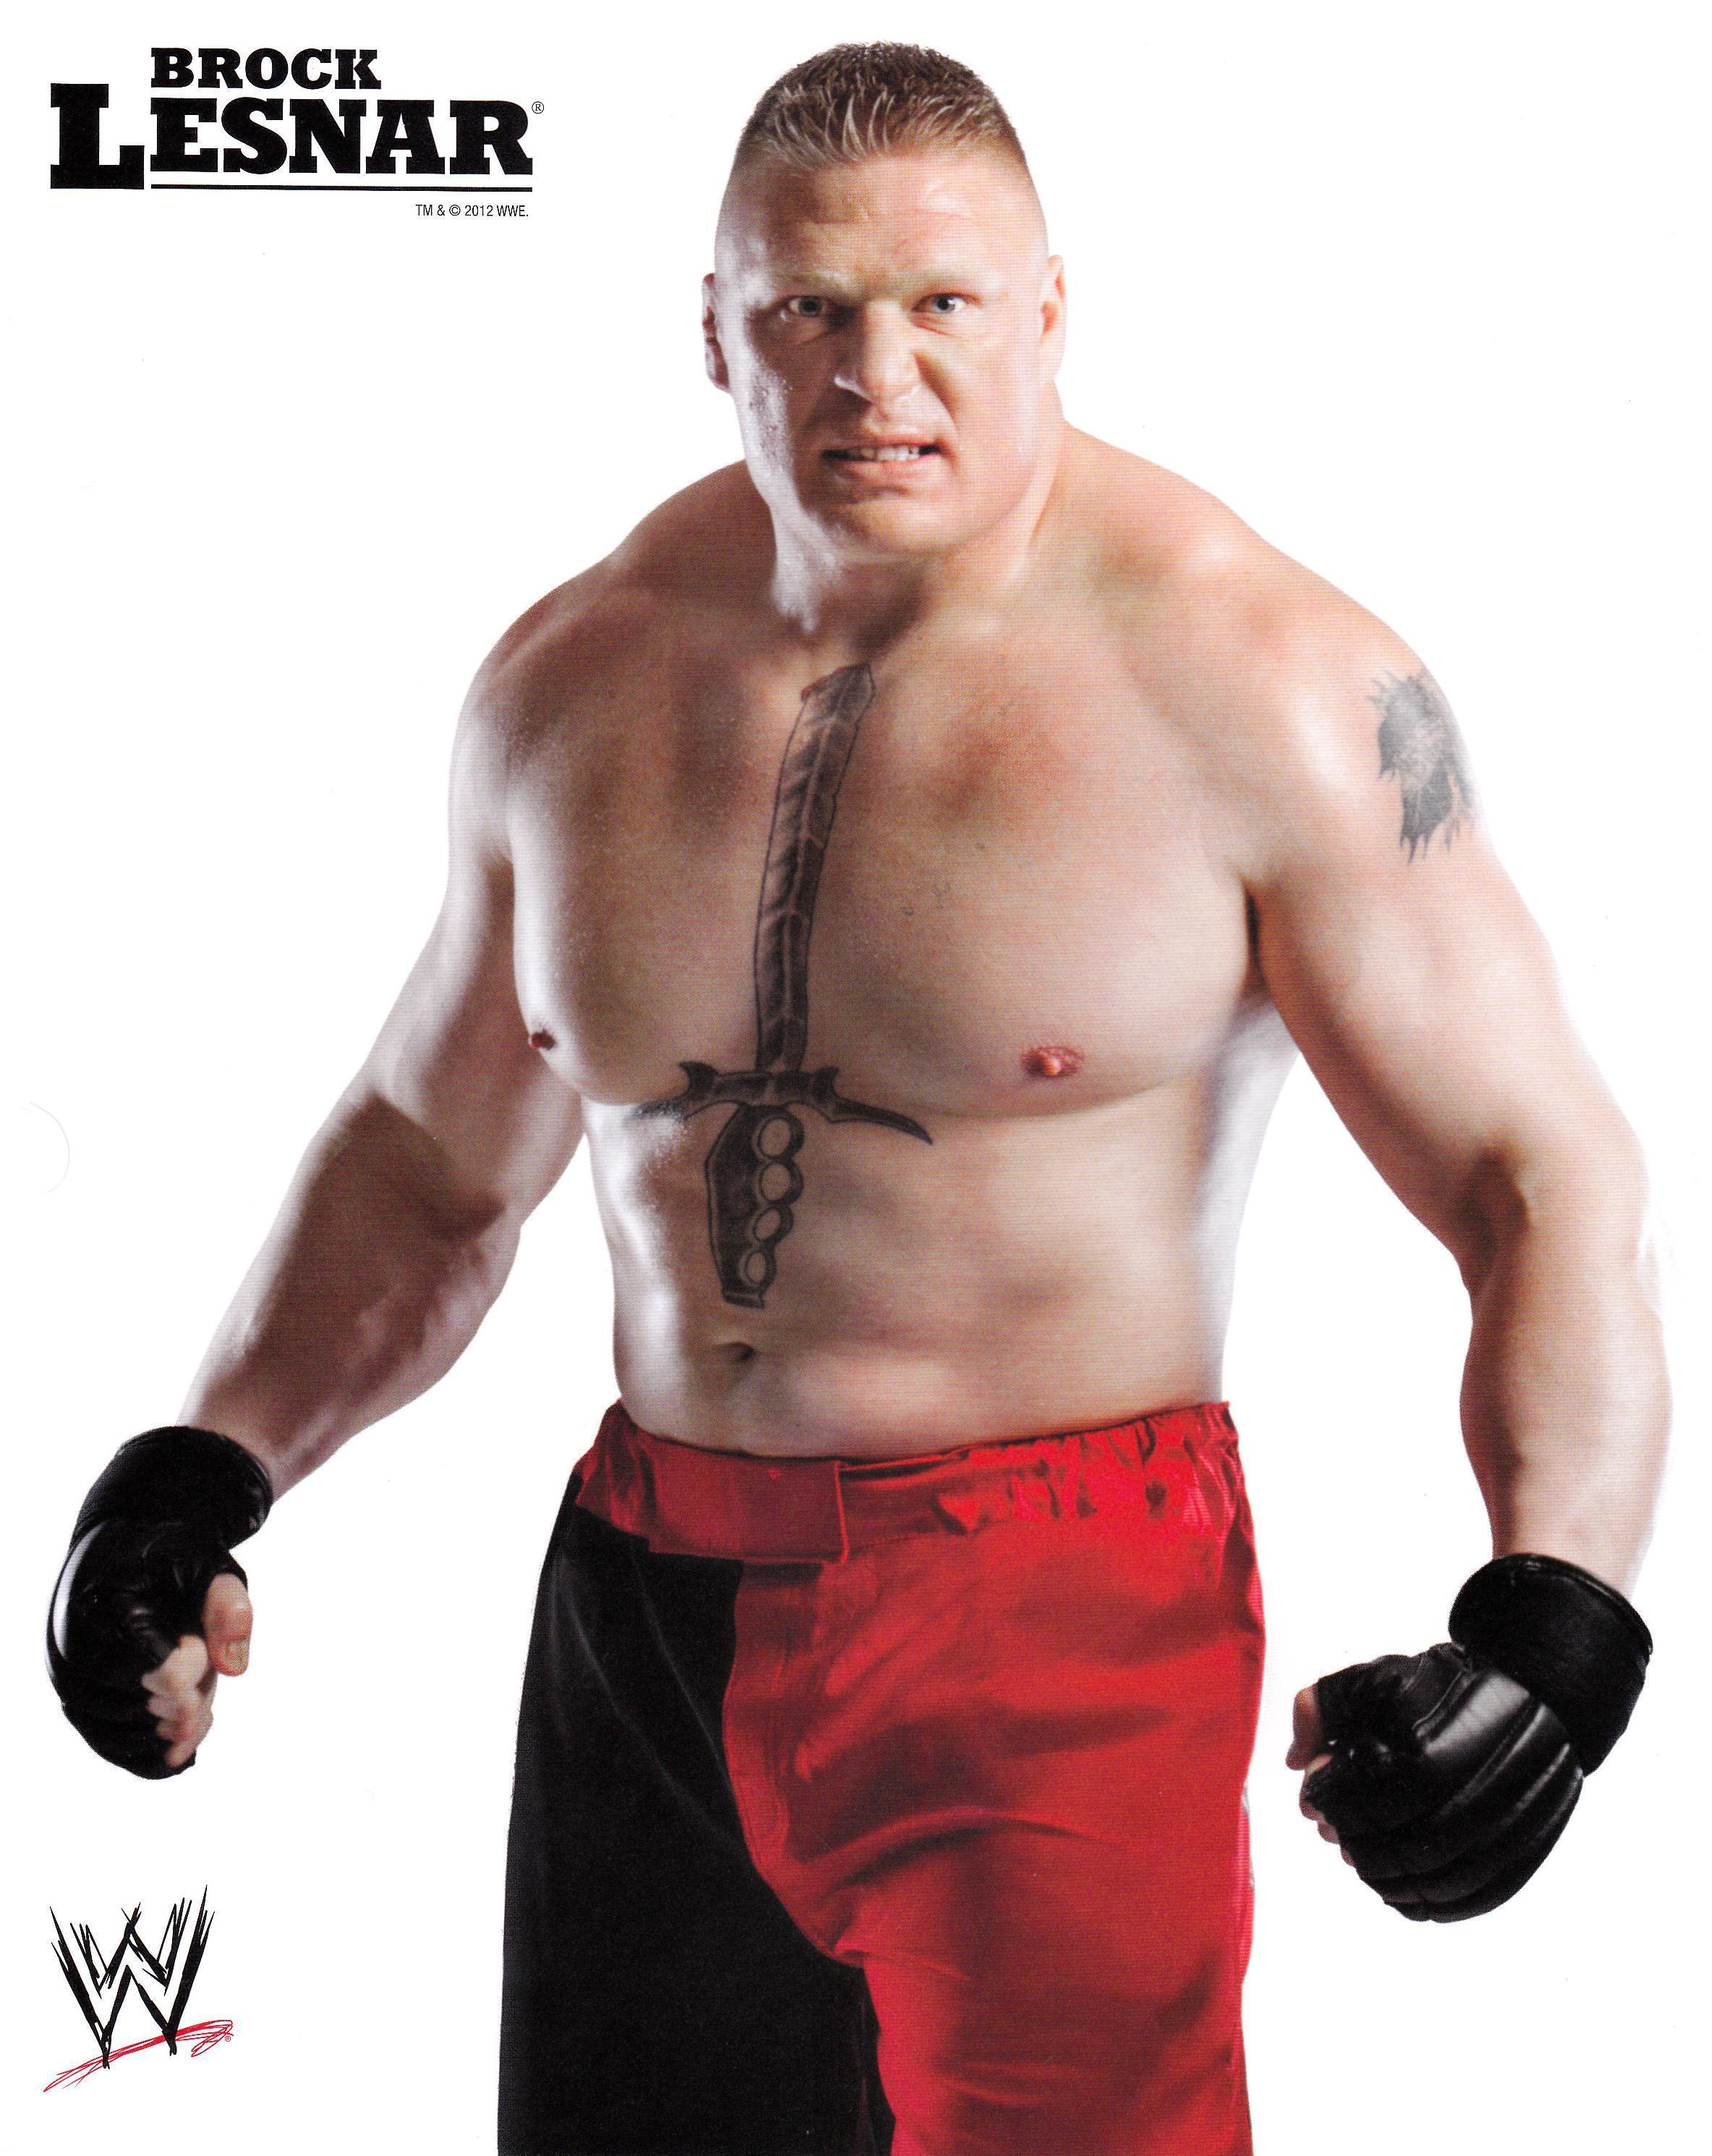 WWE Fighter BROCK LESNAR HD Wallpaper. fix tv forum